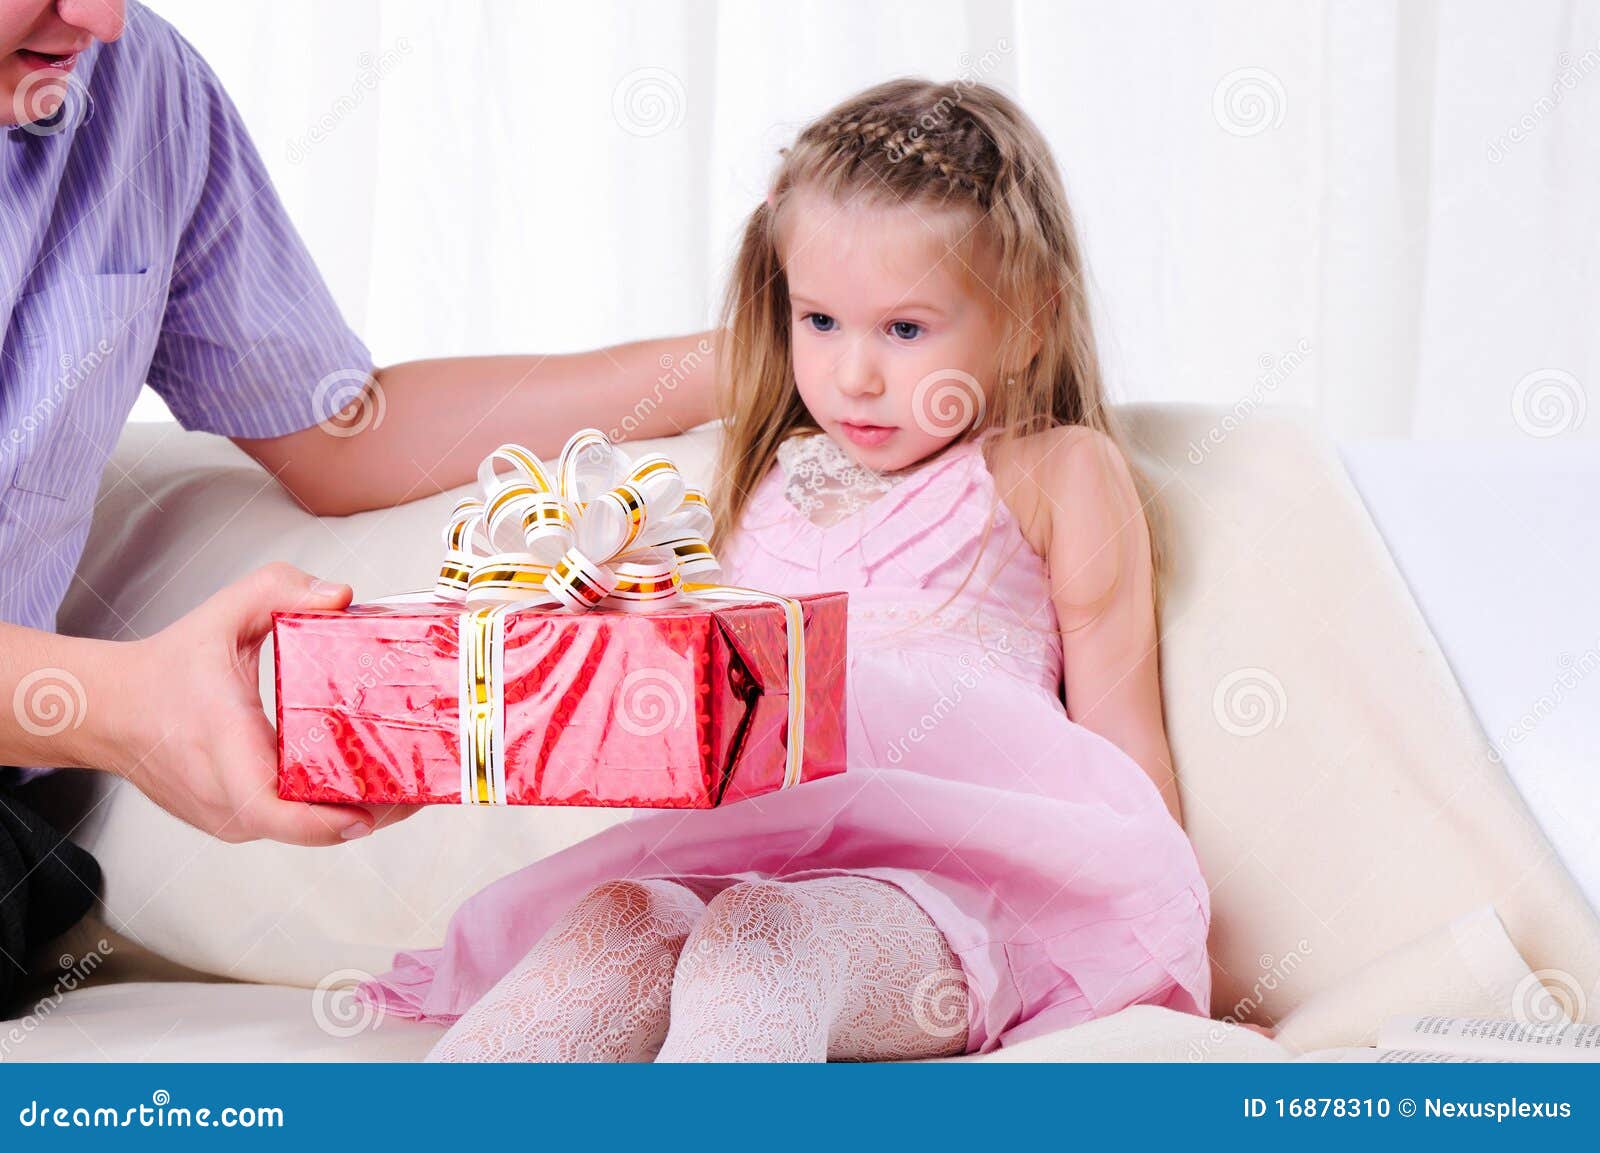 Отец засунул дочери. Папа дарит подарок. Девочка дарит подарок папе. Папа дарит подарок дочке. Маленькая девочка дарит подарок папе.